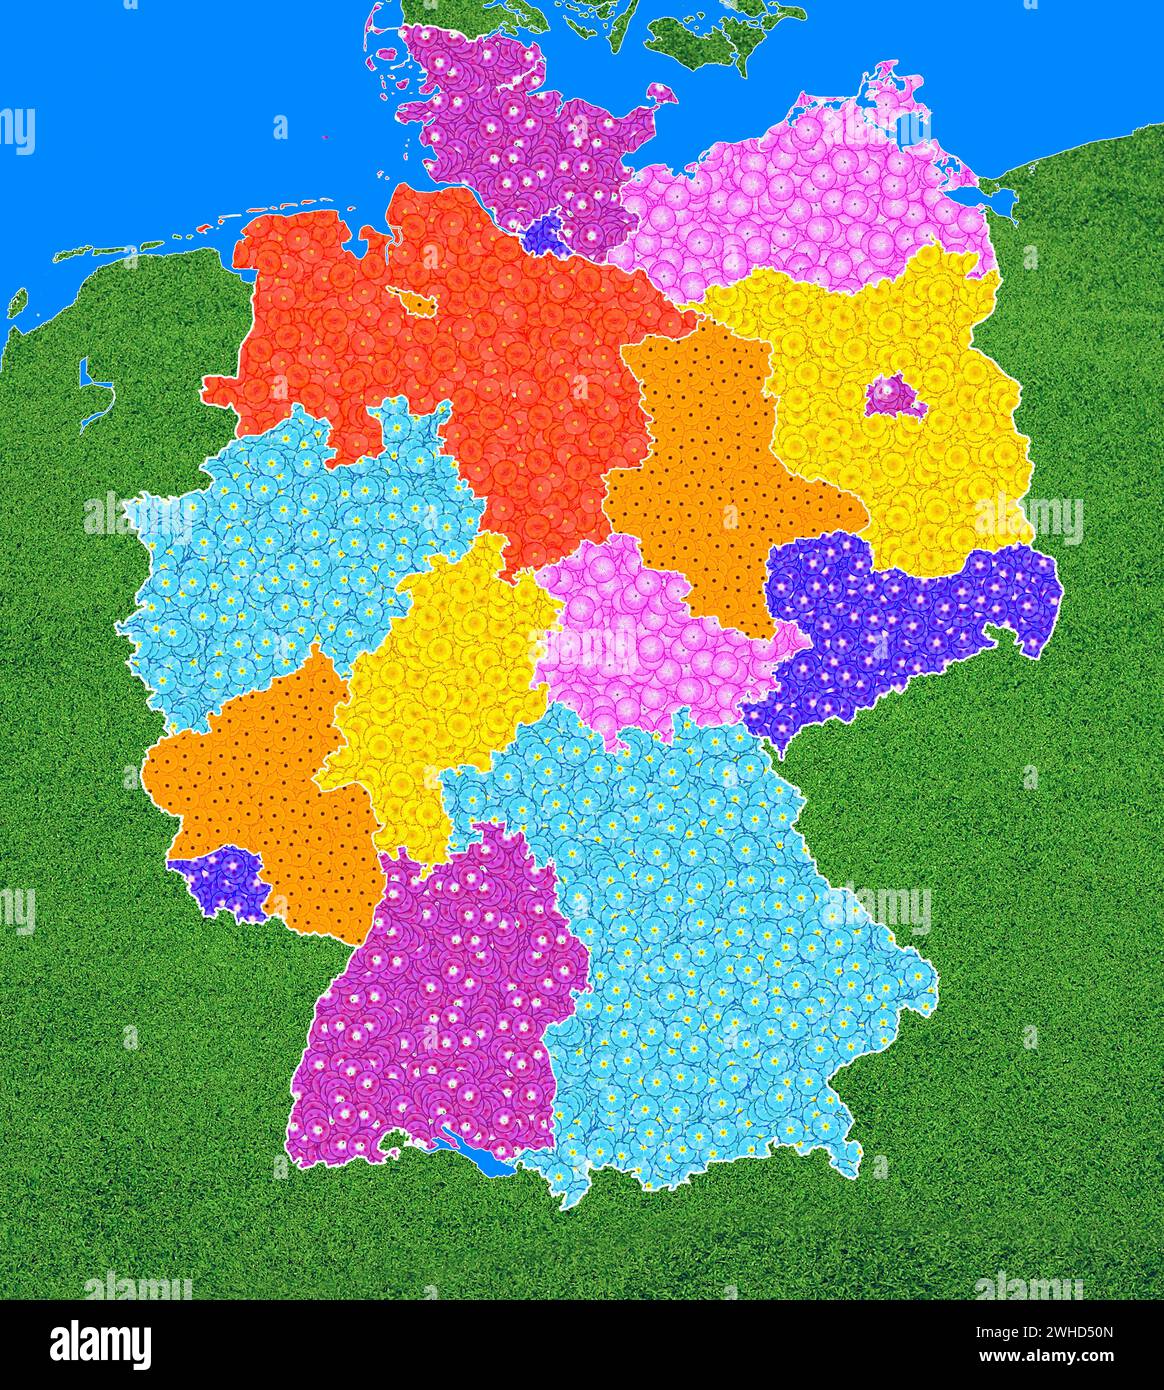 Carte géographique de l'Allemagne avec les États fédéraux, avec de nombreuses fleurs de différentes couleurs, symbole pour la conservation de la nature, la protection du climat Banque D'Images